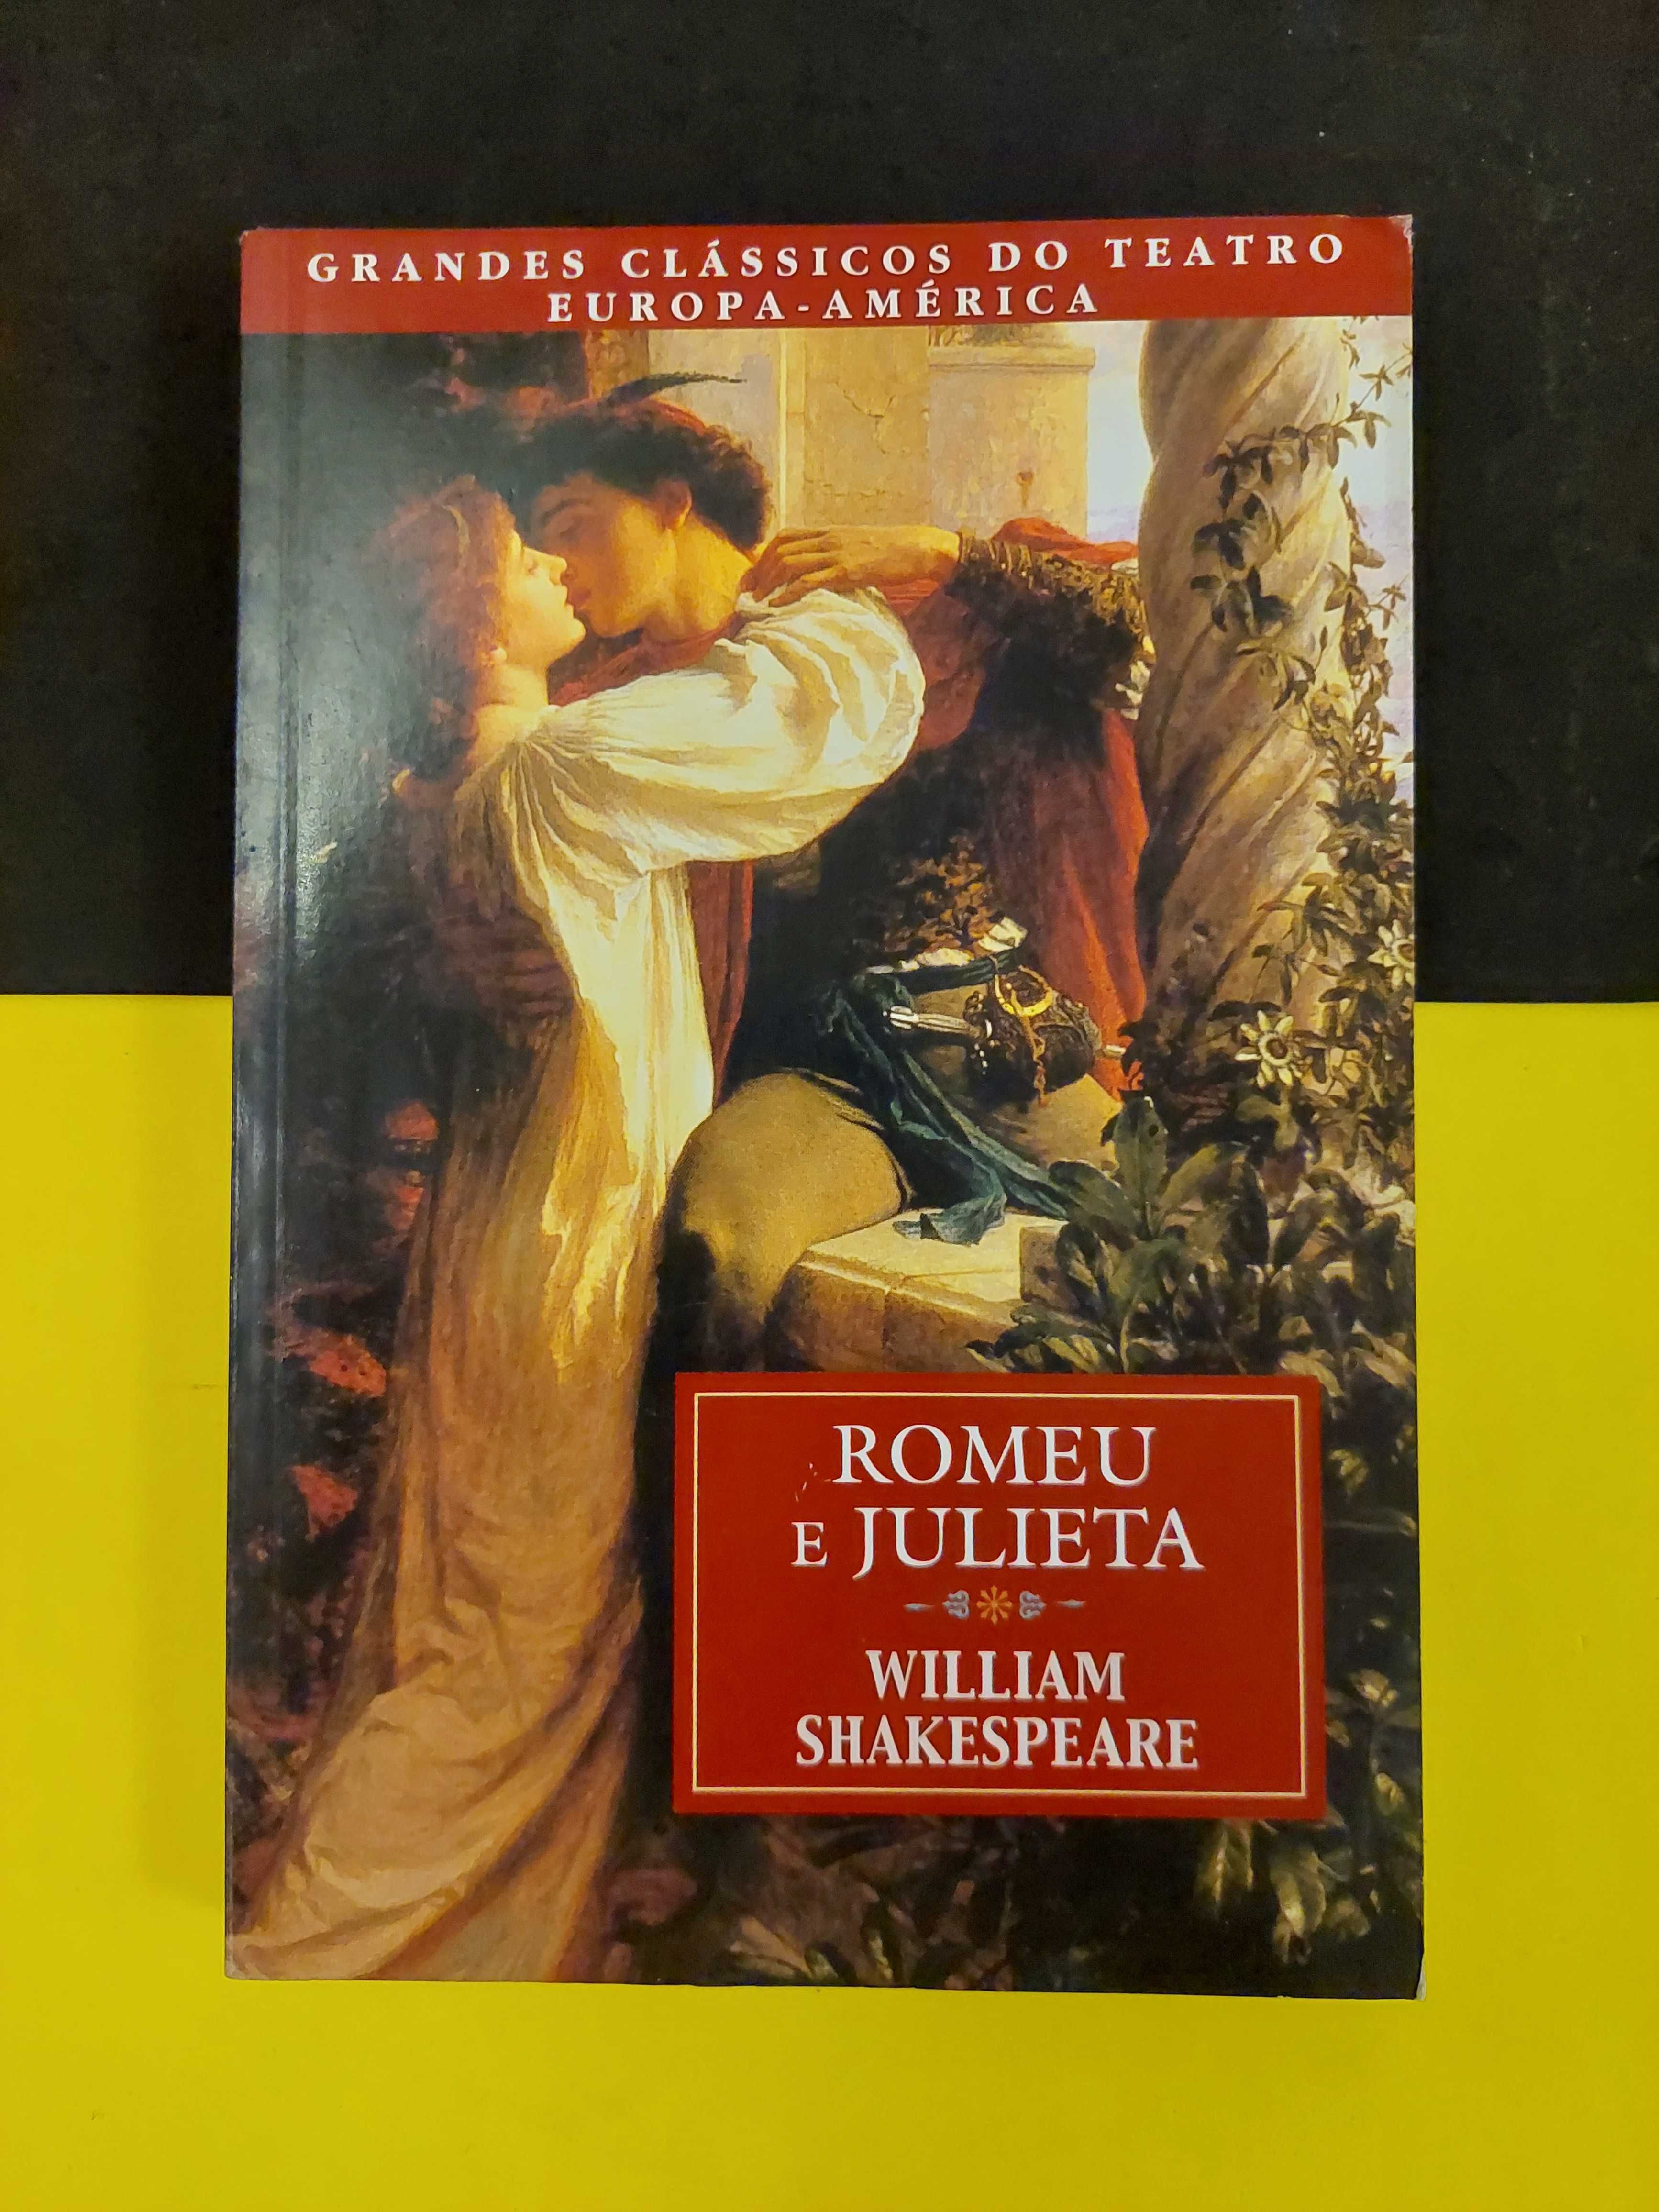 William Shakespeare - Romeu e Julieta